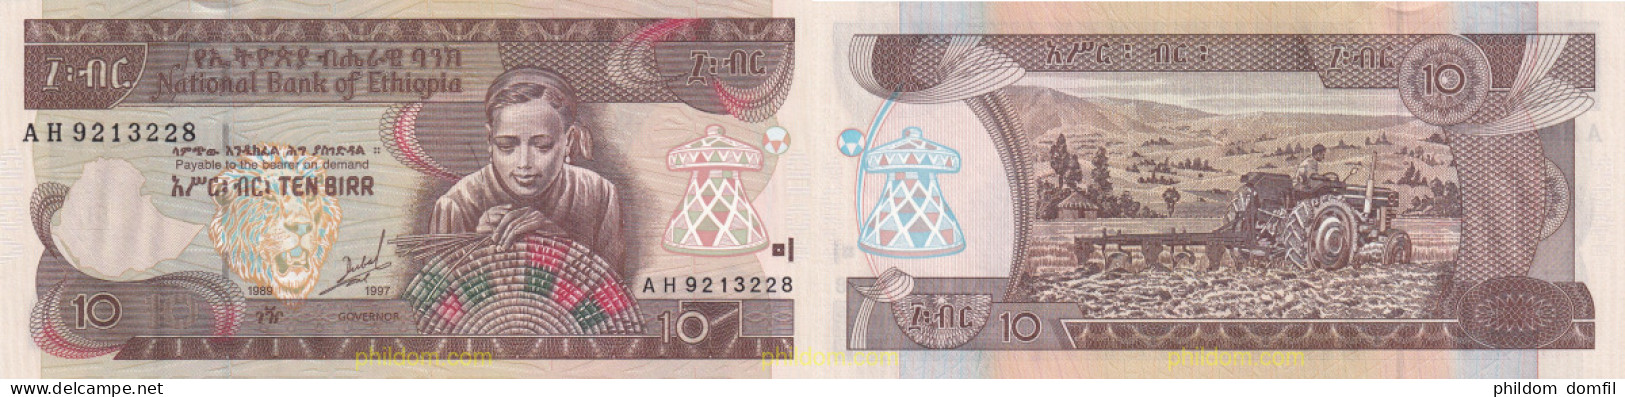 2106 ETIOPIA 1997 ETIOPIA BANK OF ETHIOPIA 10 BIRR 1997 - Ethiopia